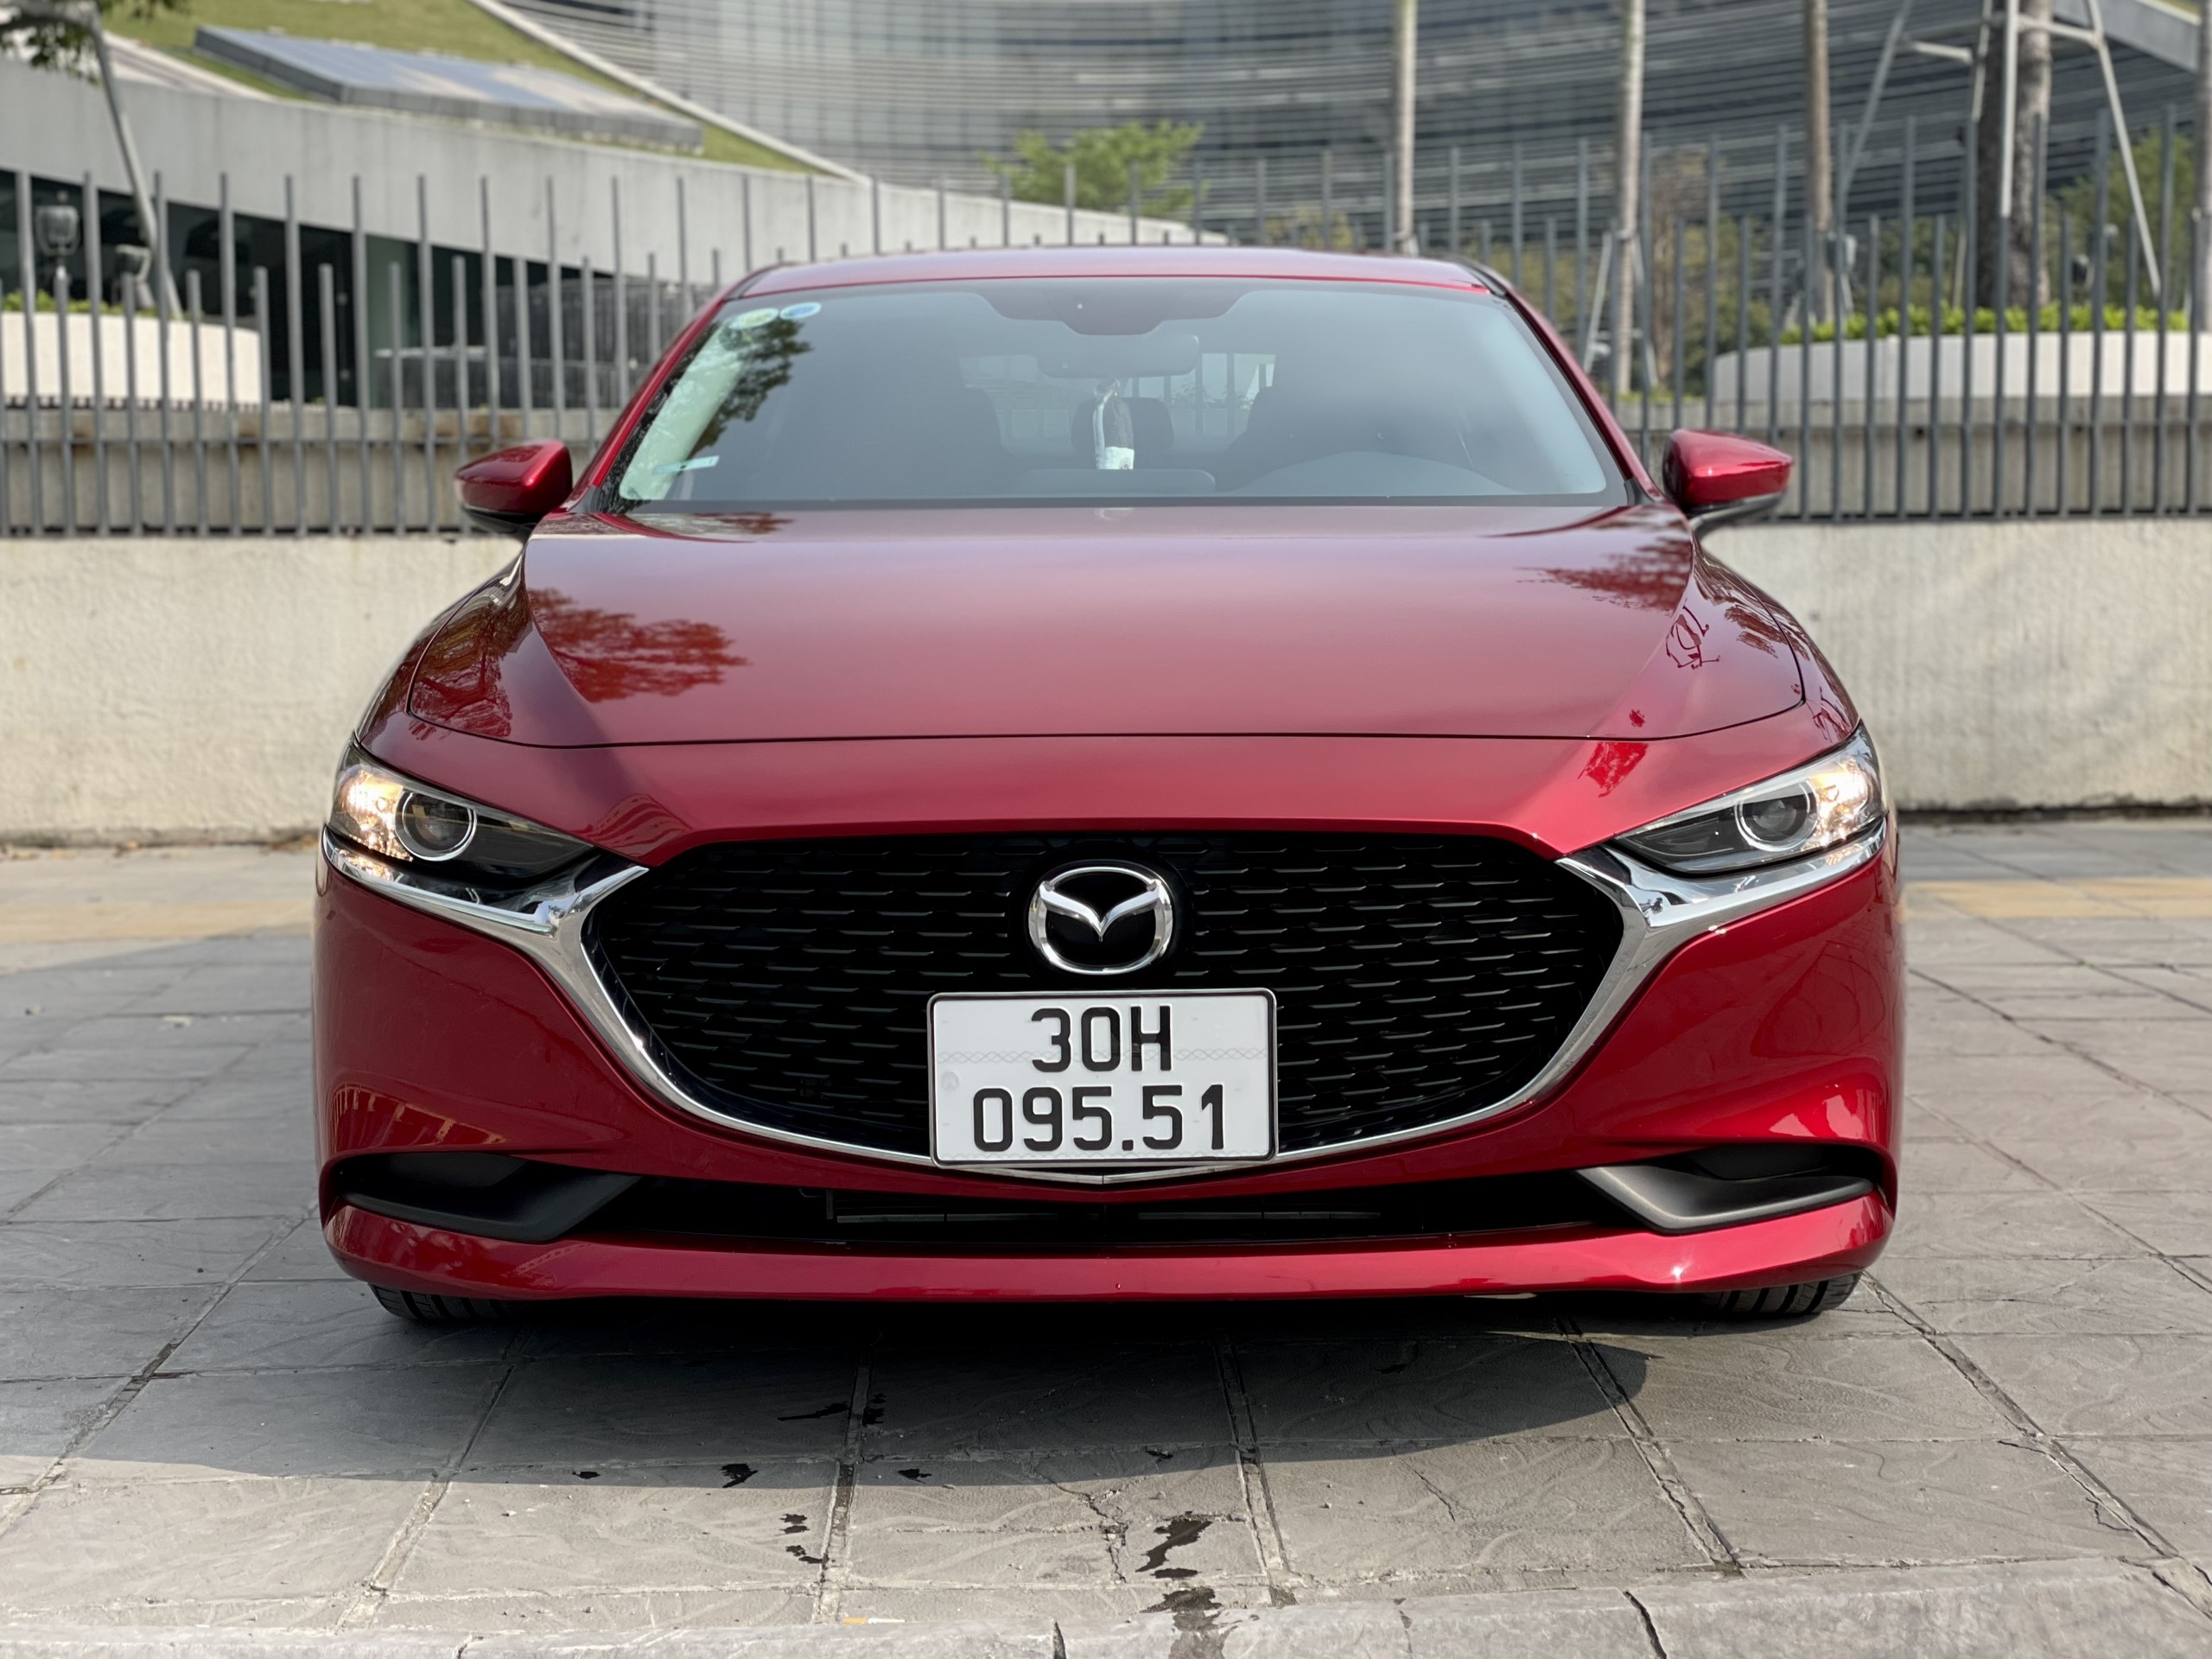 Mazda 3 Giá xe lăn bánh khuyến mại đánh giá